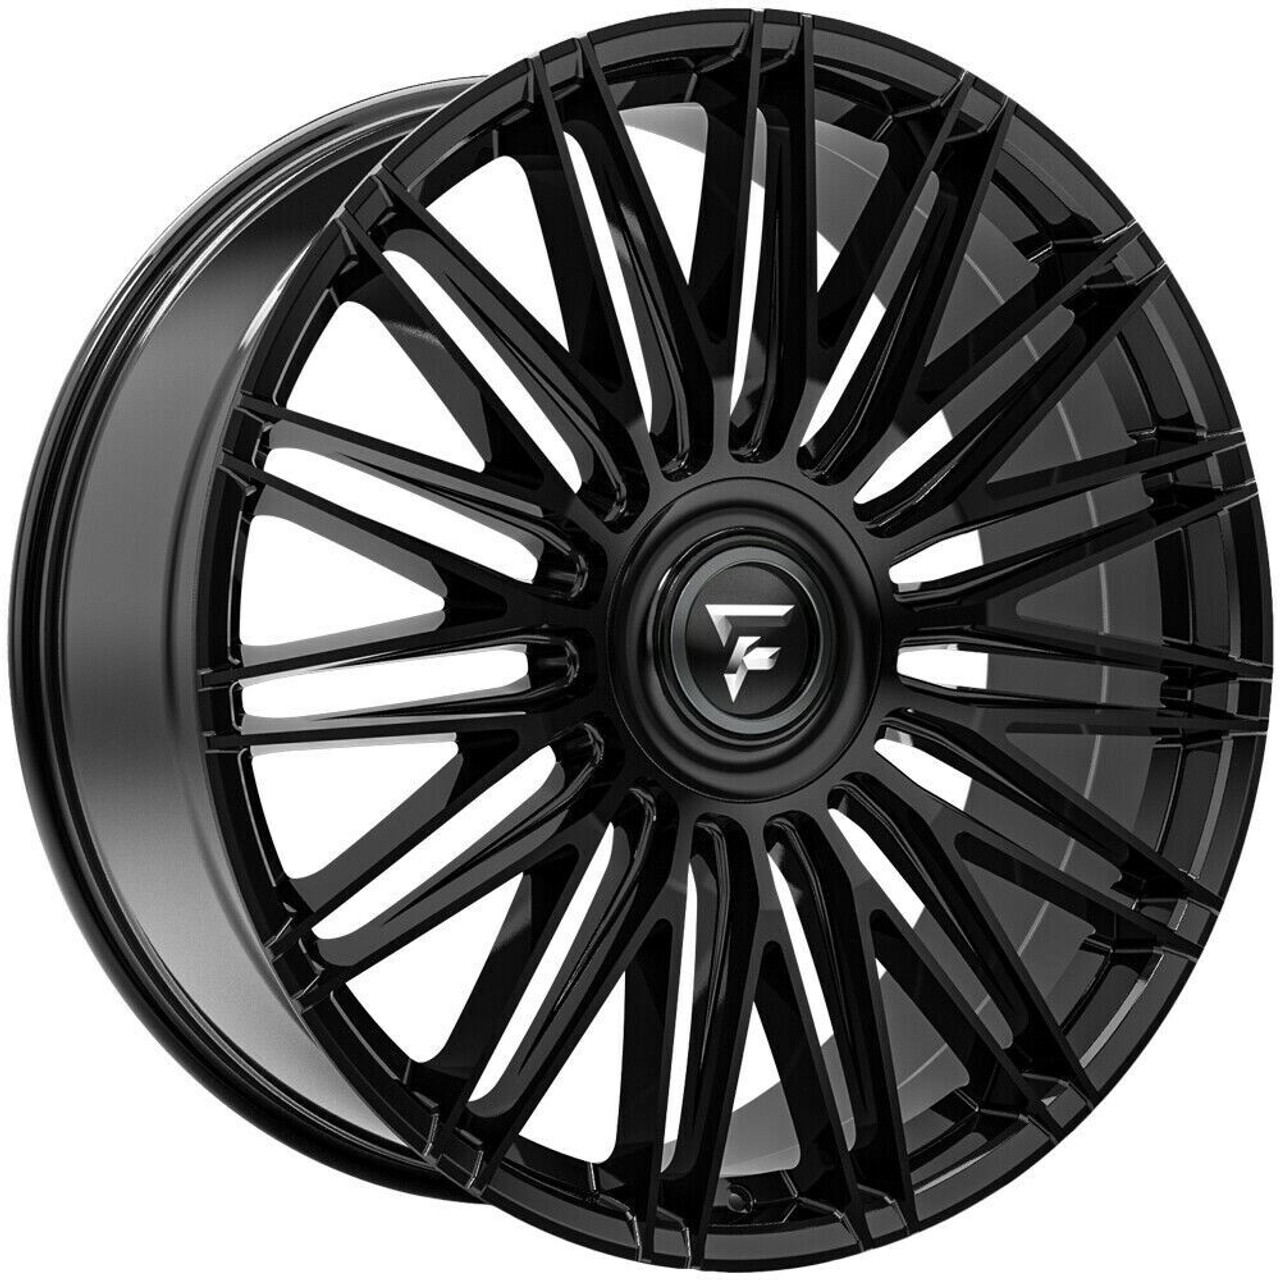 24" Fittipaldi Street FS369B Gloss Black 24x10 Wheel 6x135 6x5.5 30mm Rim